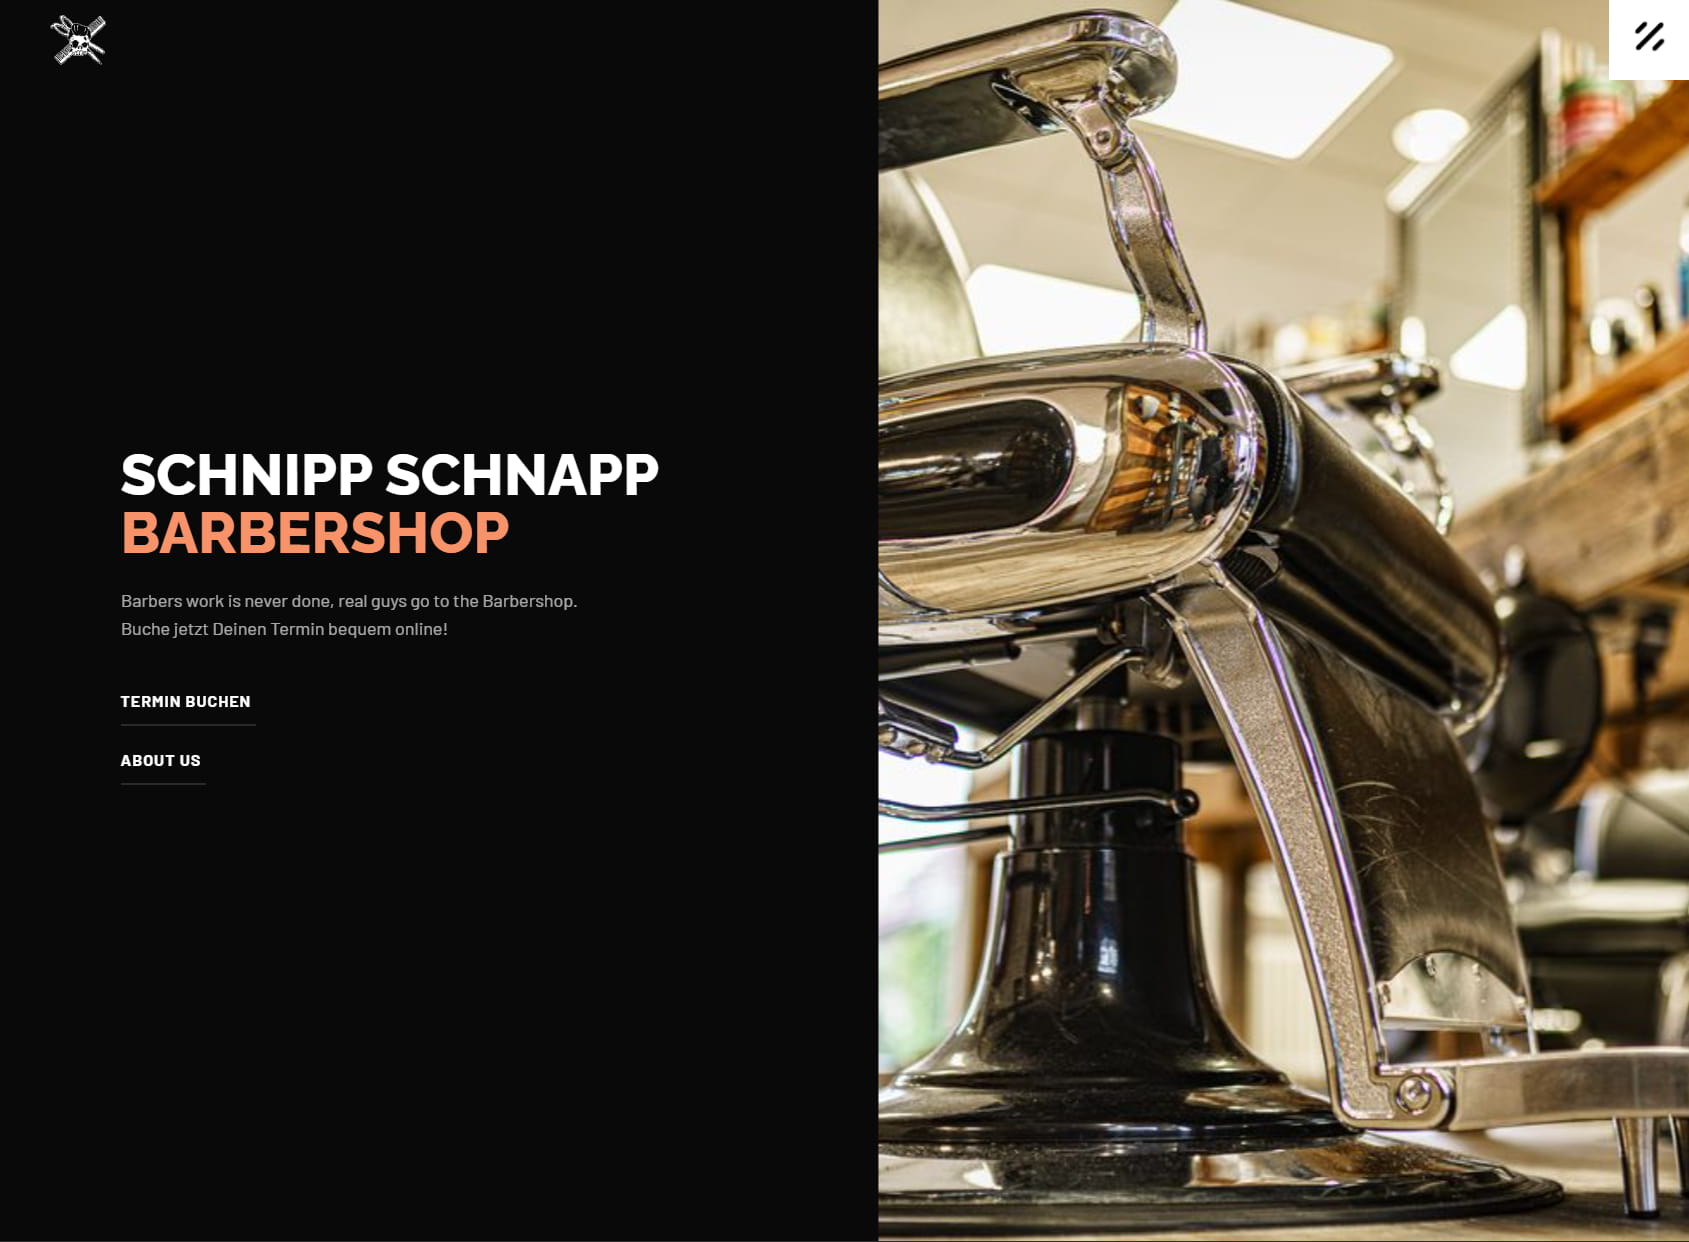 SchnippSchnapp Barbershop GmbH